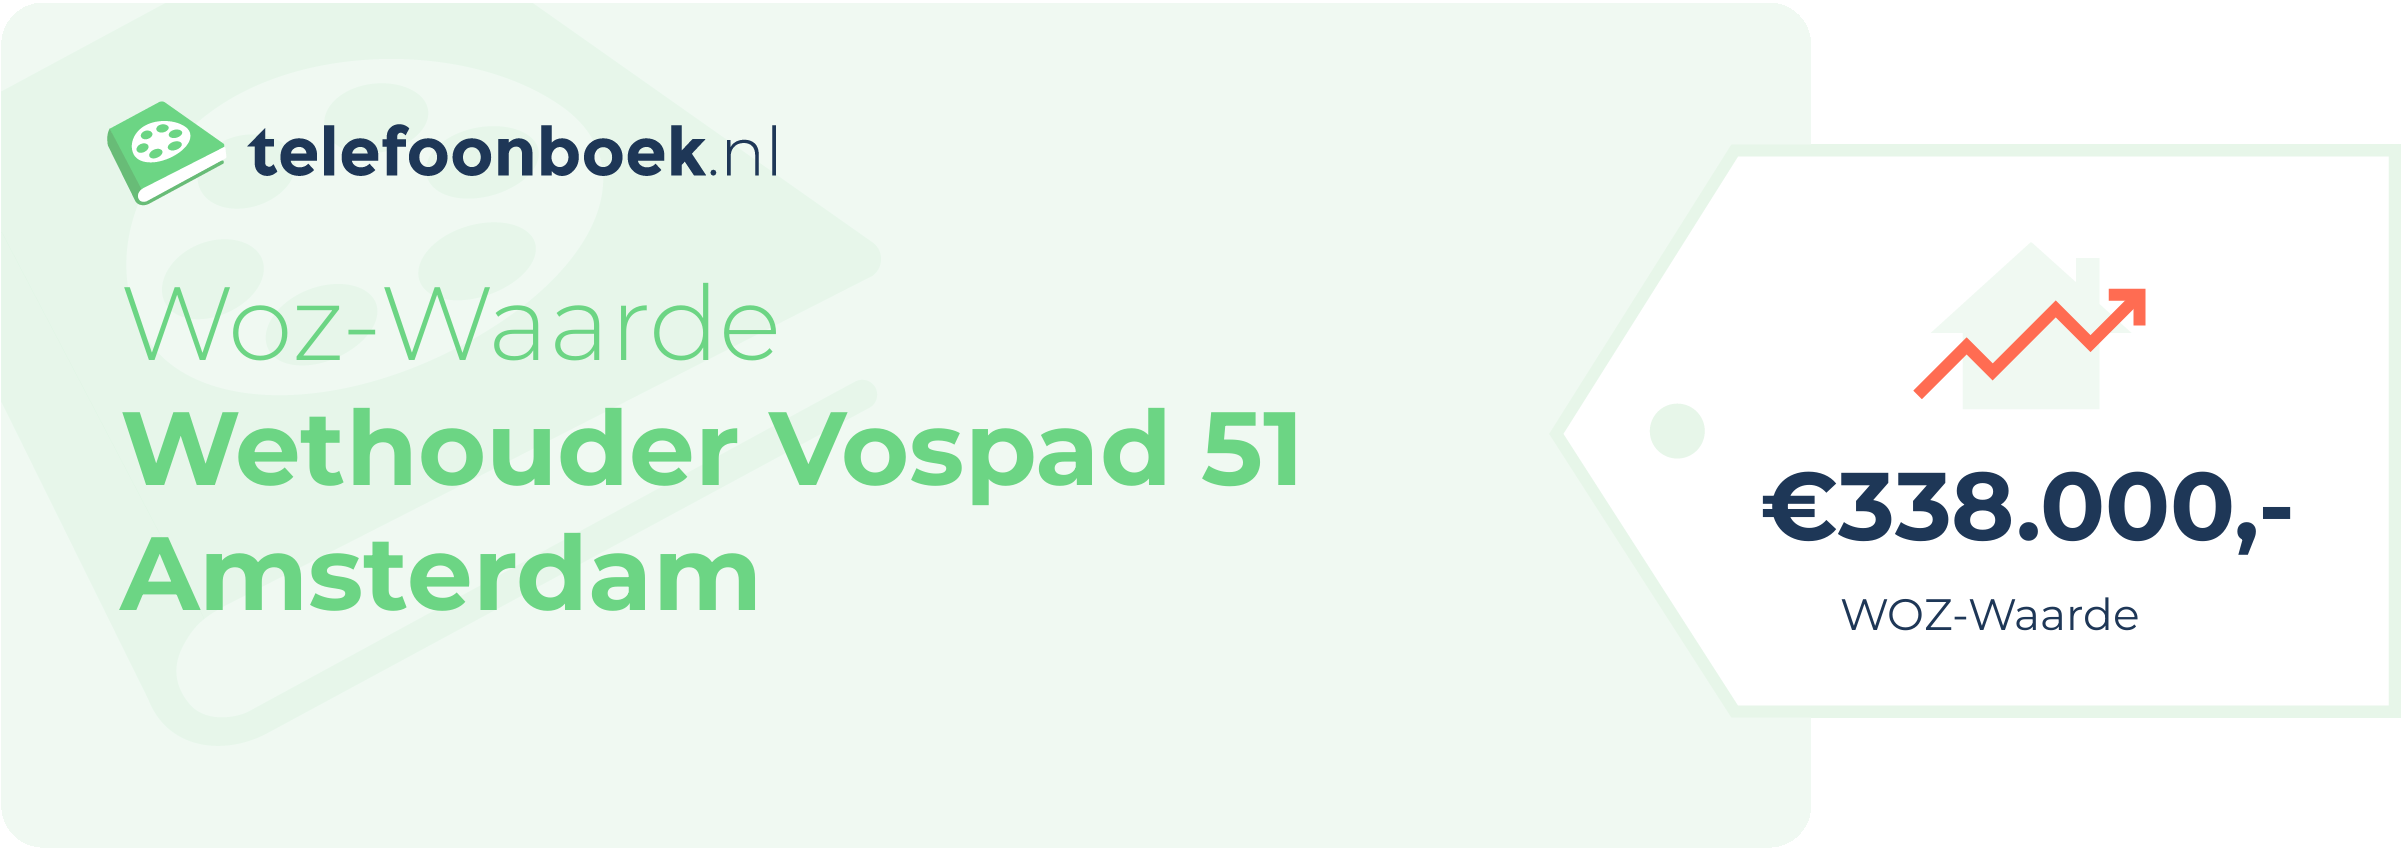 WOZ-waarde Wethouder Vospad 51 Amsterdam